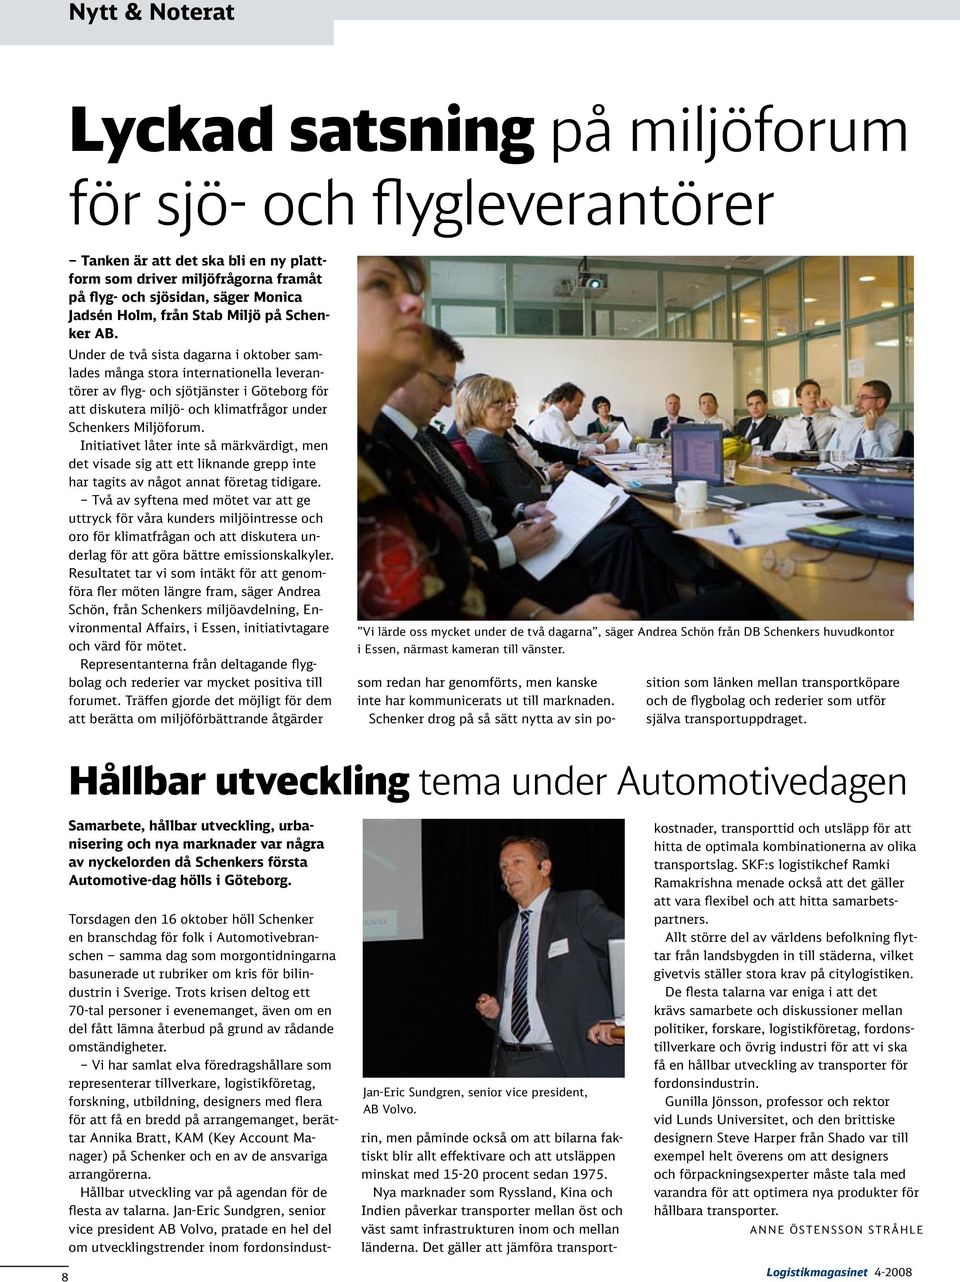 Under de två sista dagarna i oktober samlades många stora internationella leverantörer av flyg- och sjötjänster i Göteborg för att diskutera miljö- och klimatfrågor under Schenkers Miljöforum.